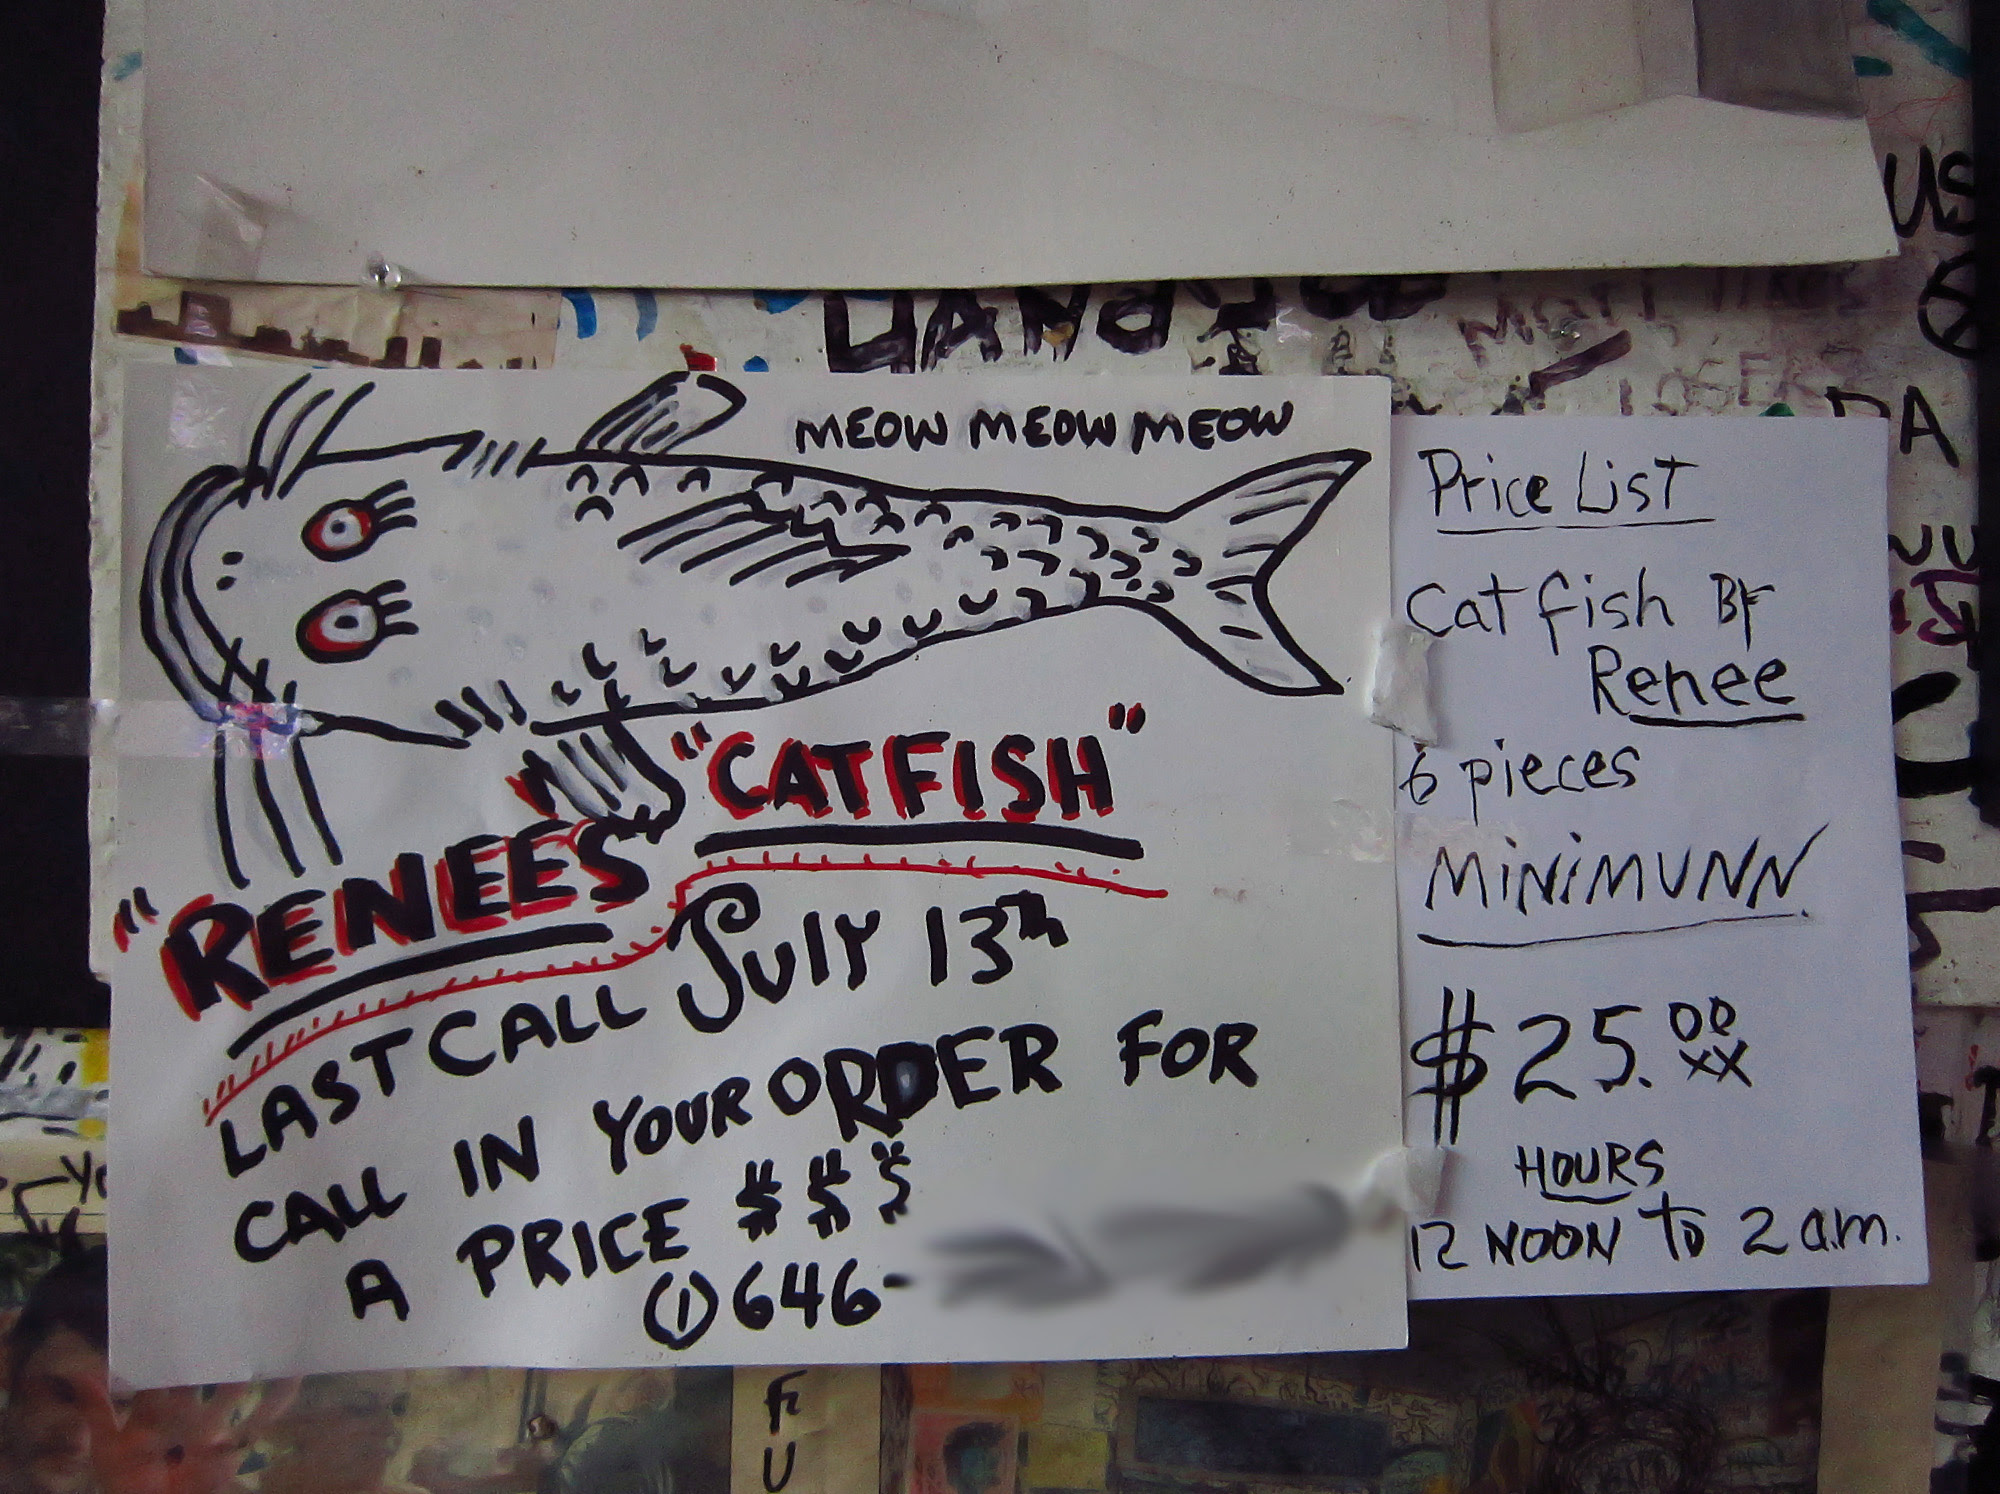 Renee's catfish